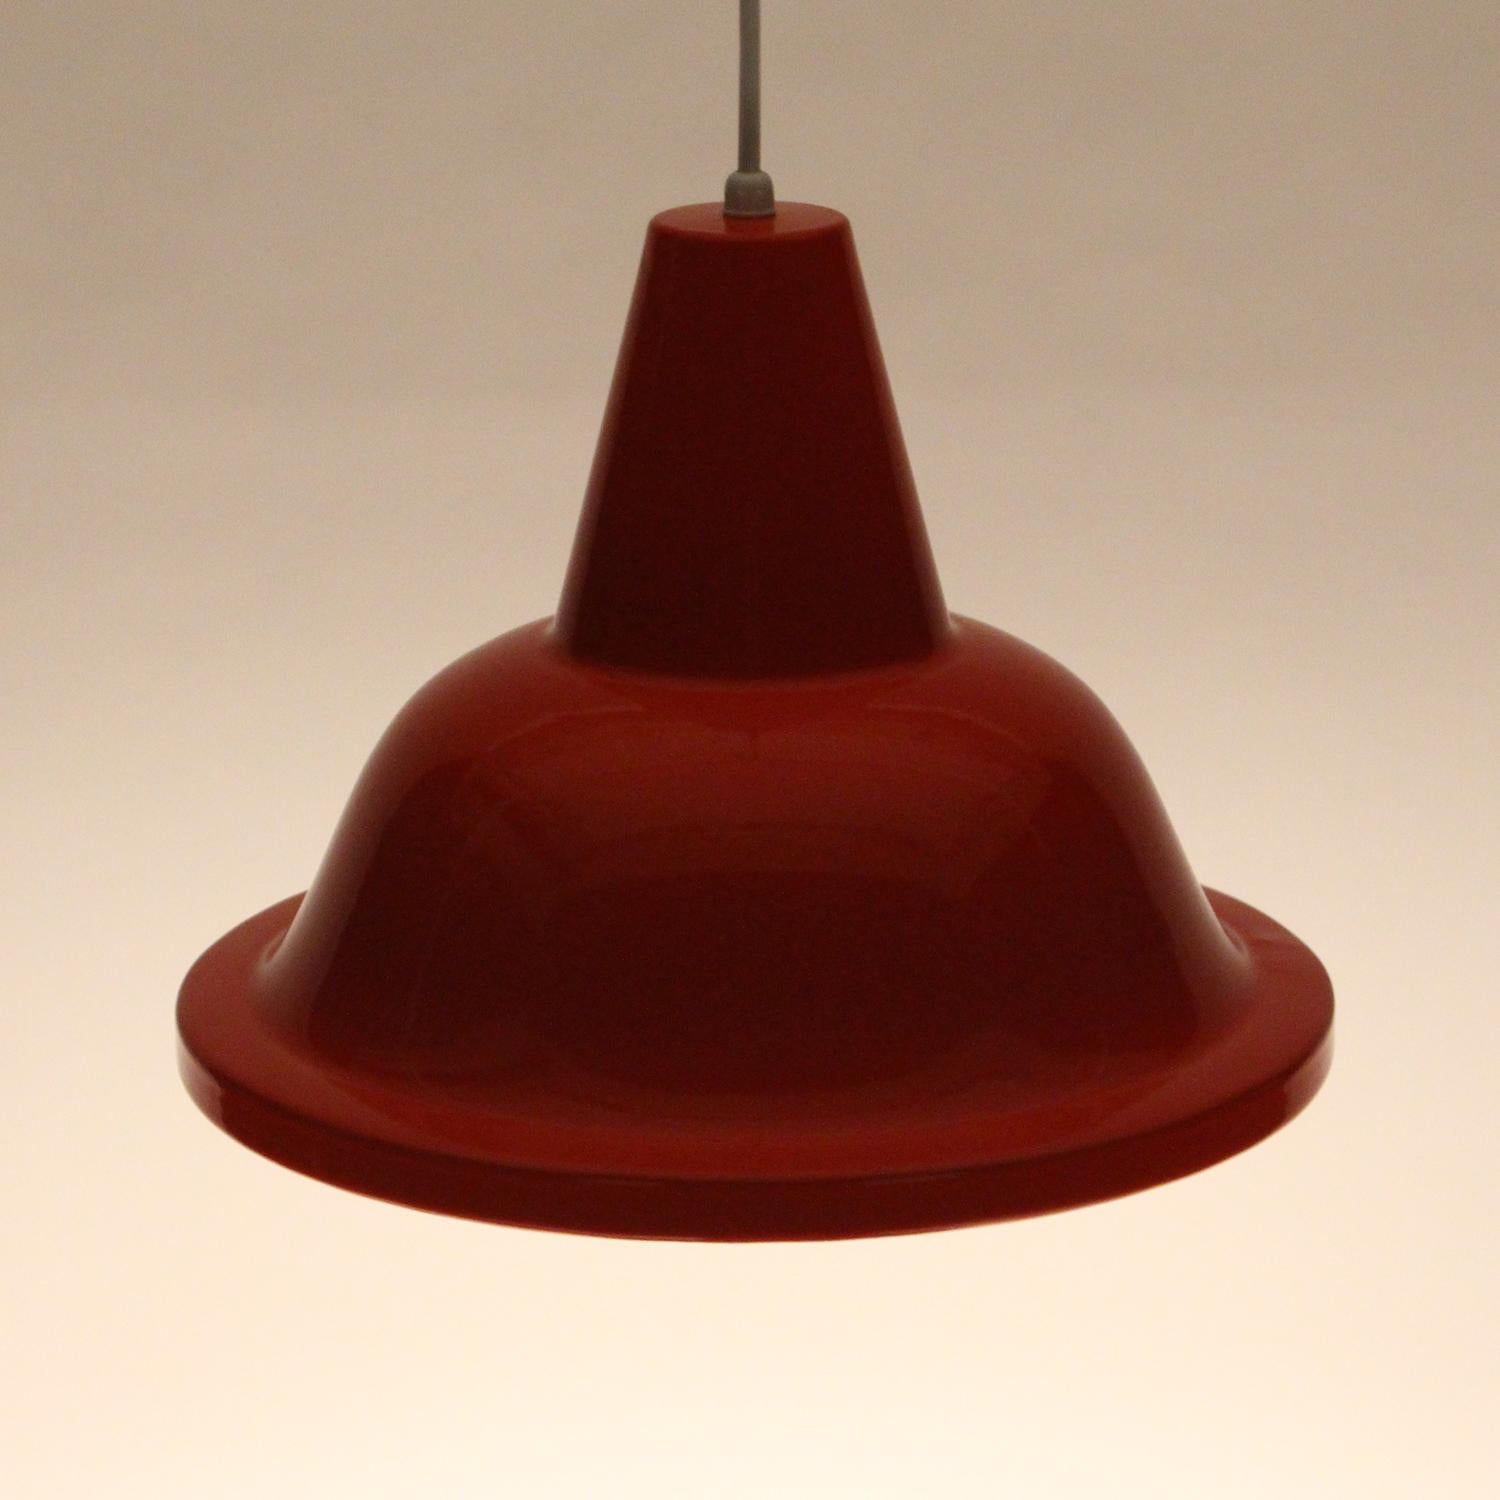 Mid-20th Century Orange Pendant 1960s Scandinavian Industrial Lighting Design